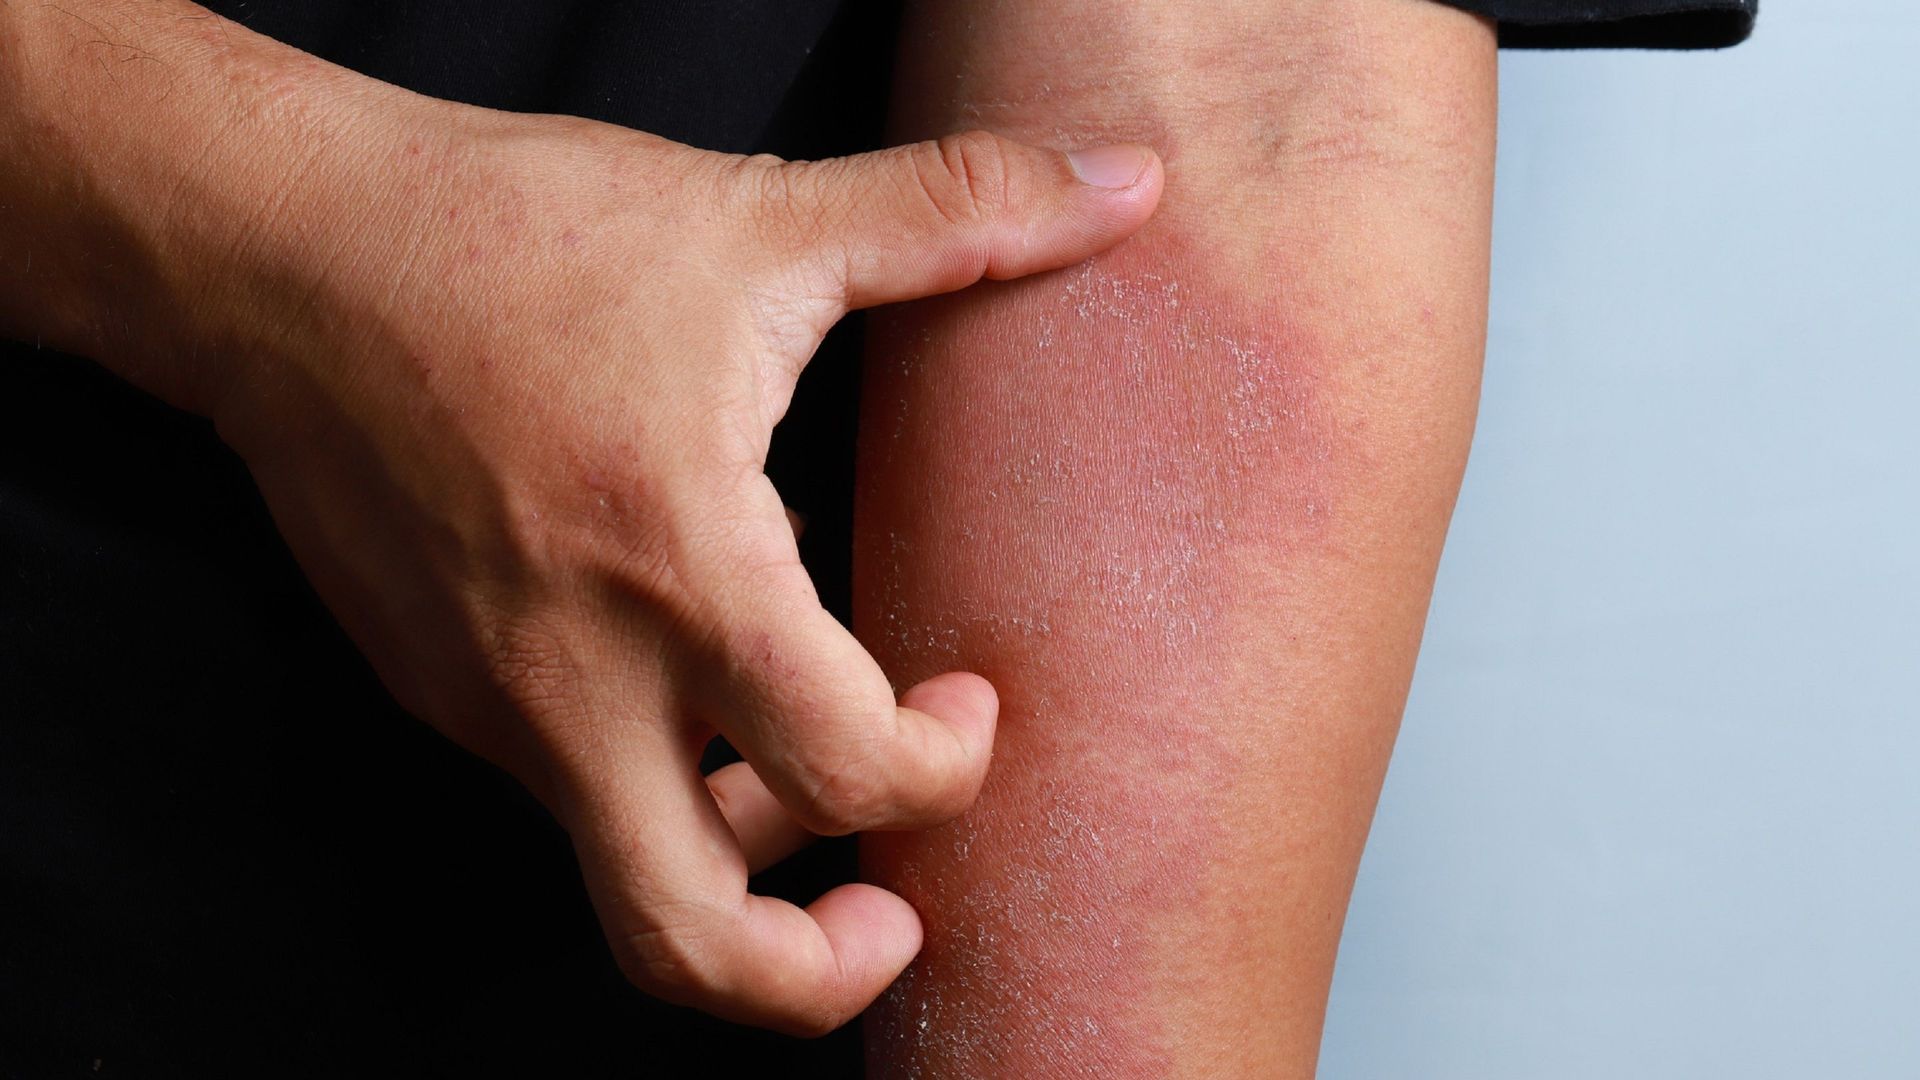 Absentéisme, mal-être : comment aider les ados à mieux vivre avec la dermatite atopique ?